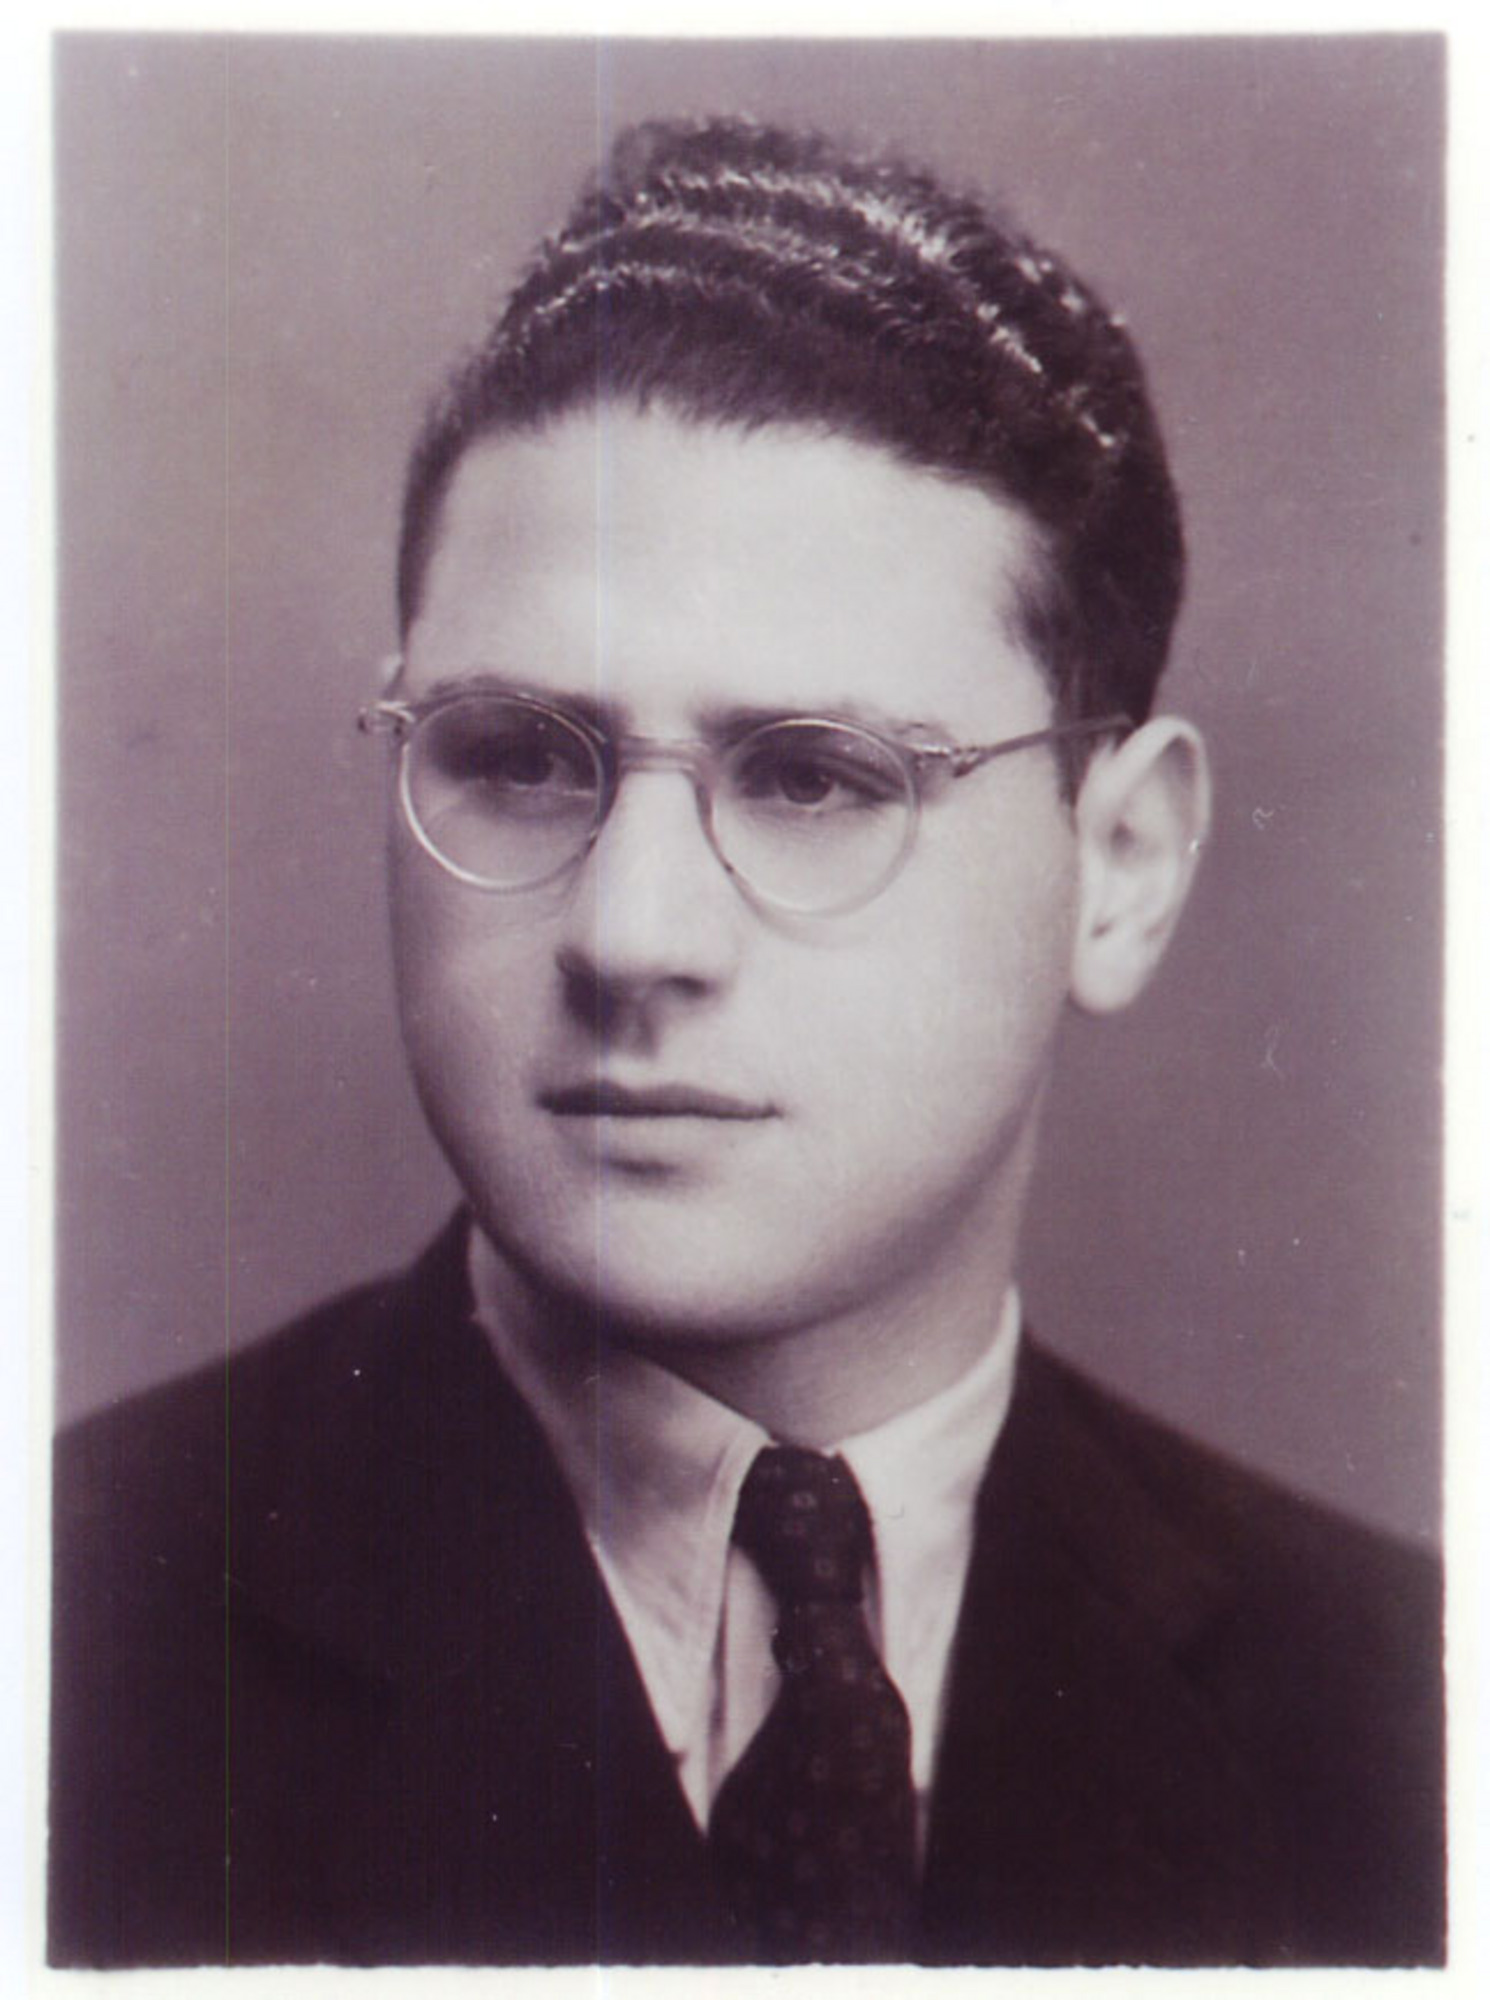 Jiří Diamant in 1954